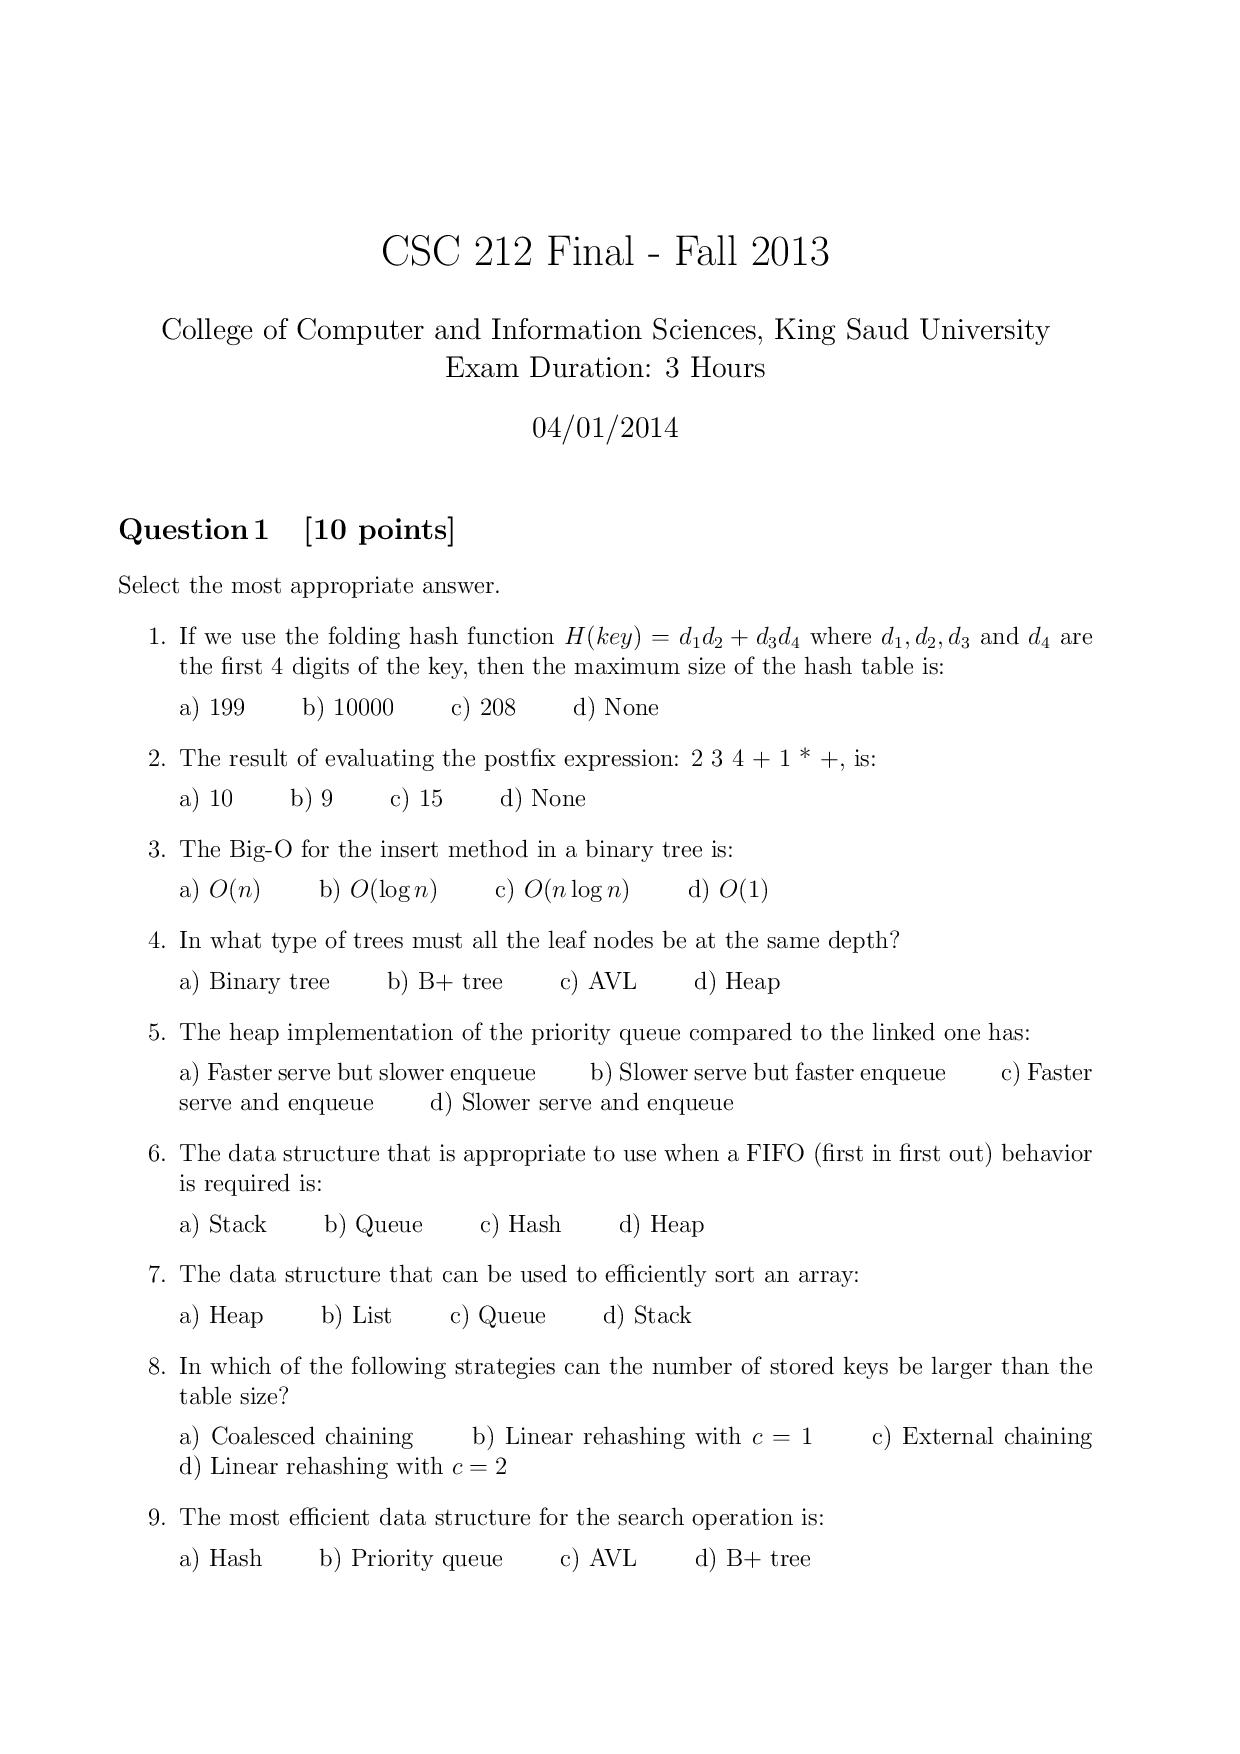 اسئلة اختبار عال 212 تراكيب بيانات الفصل الأول 1434هـ